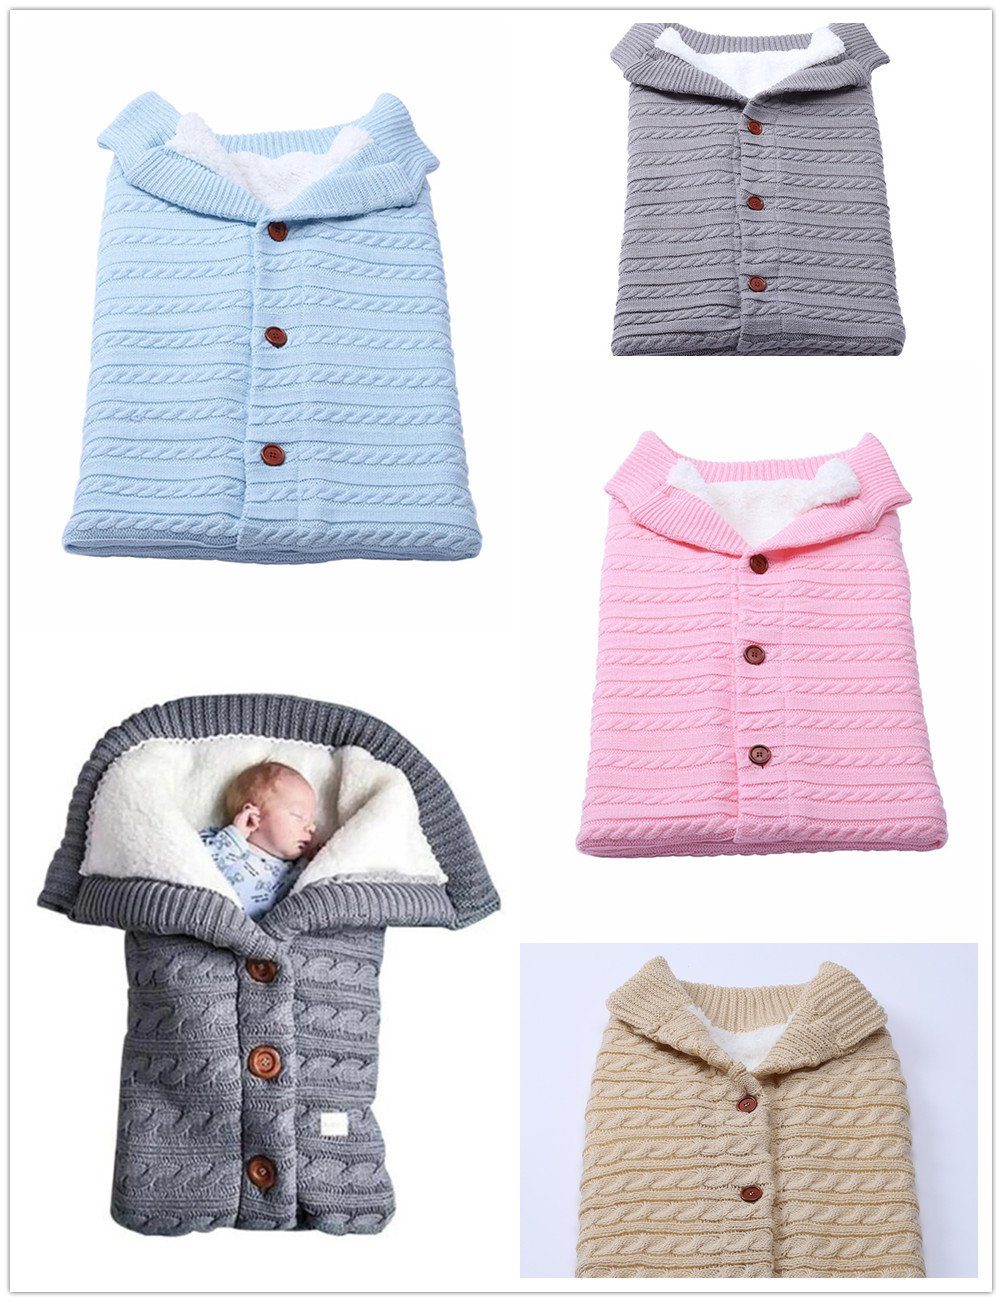 XDeer Babyschlafsack Baby Schlafsack für Kinderwagen Wickeldecke Wickelwickel Warmer, Warmer Schlafsack für Babys Neugeboren 0-12 Monat pink